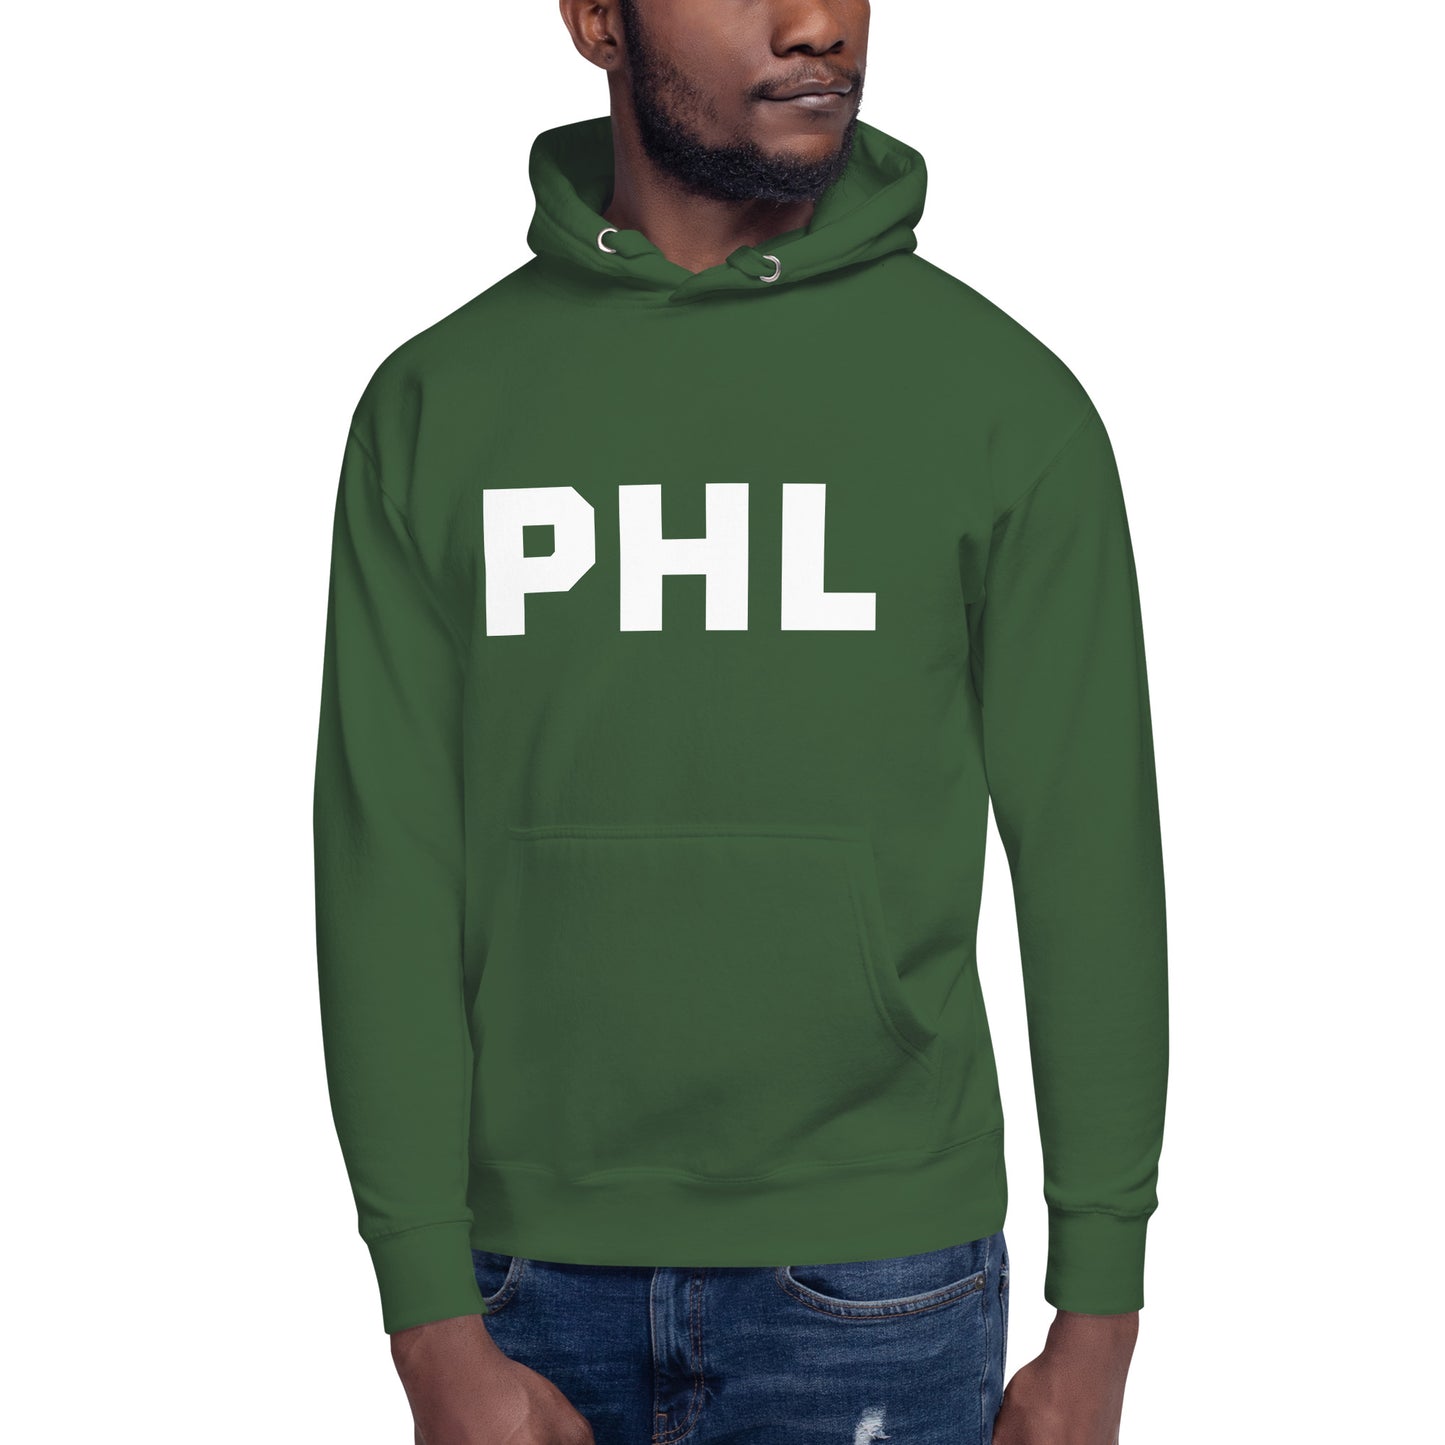 PHL Philadelphia Team Hoodie